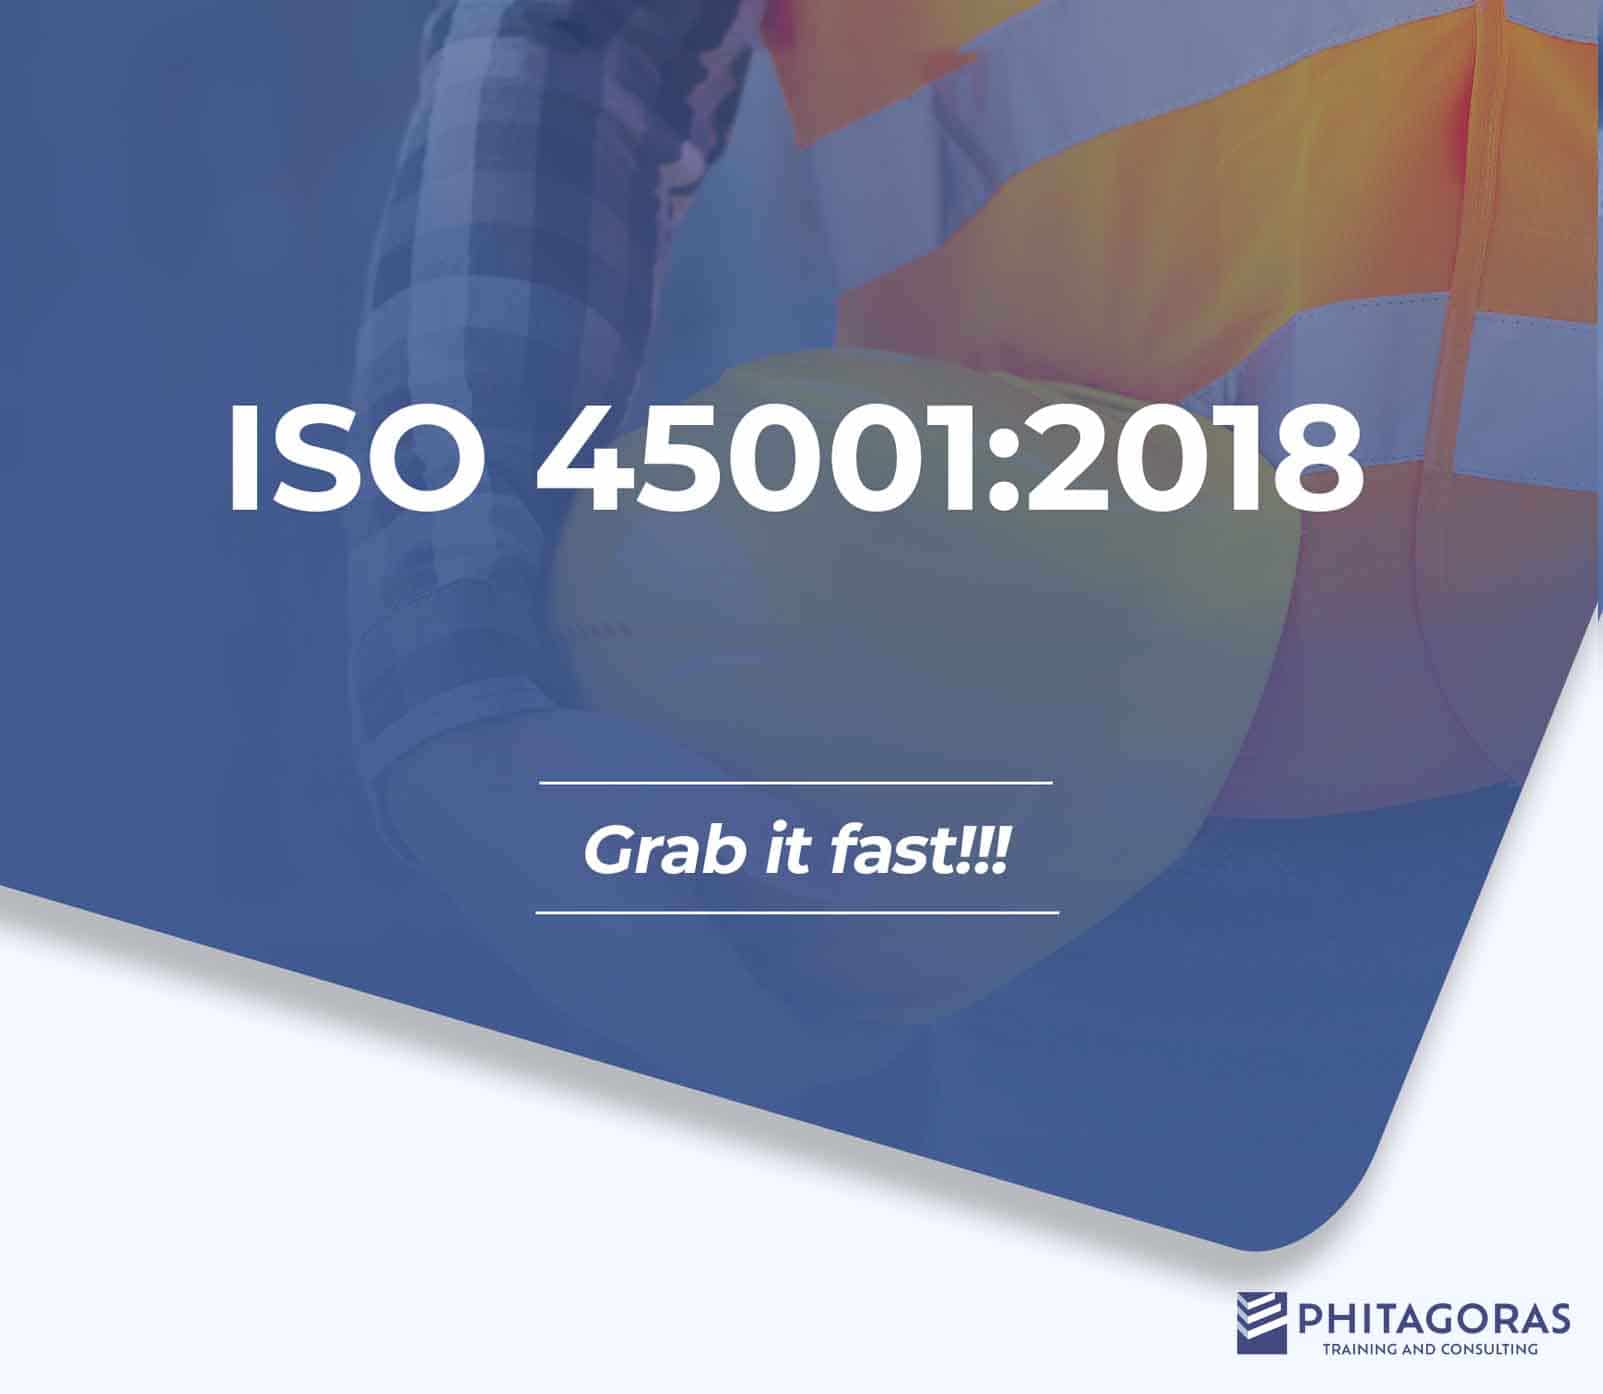 Training ISO 45001:2018